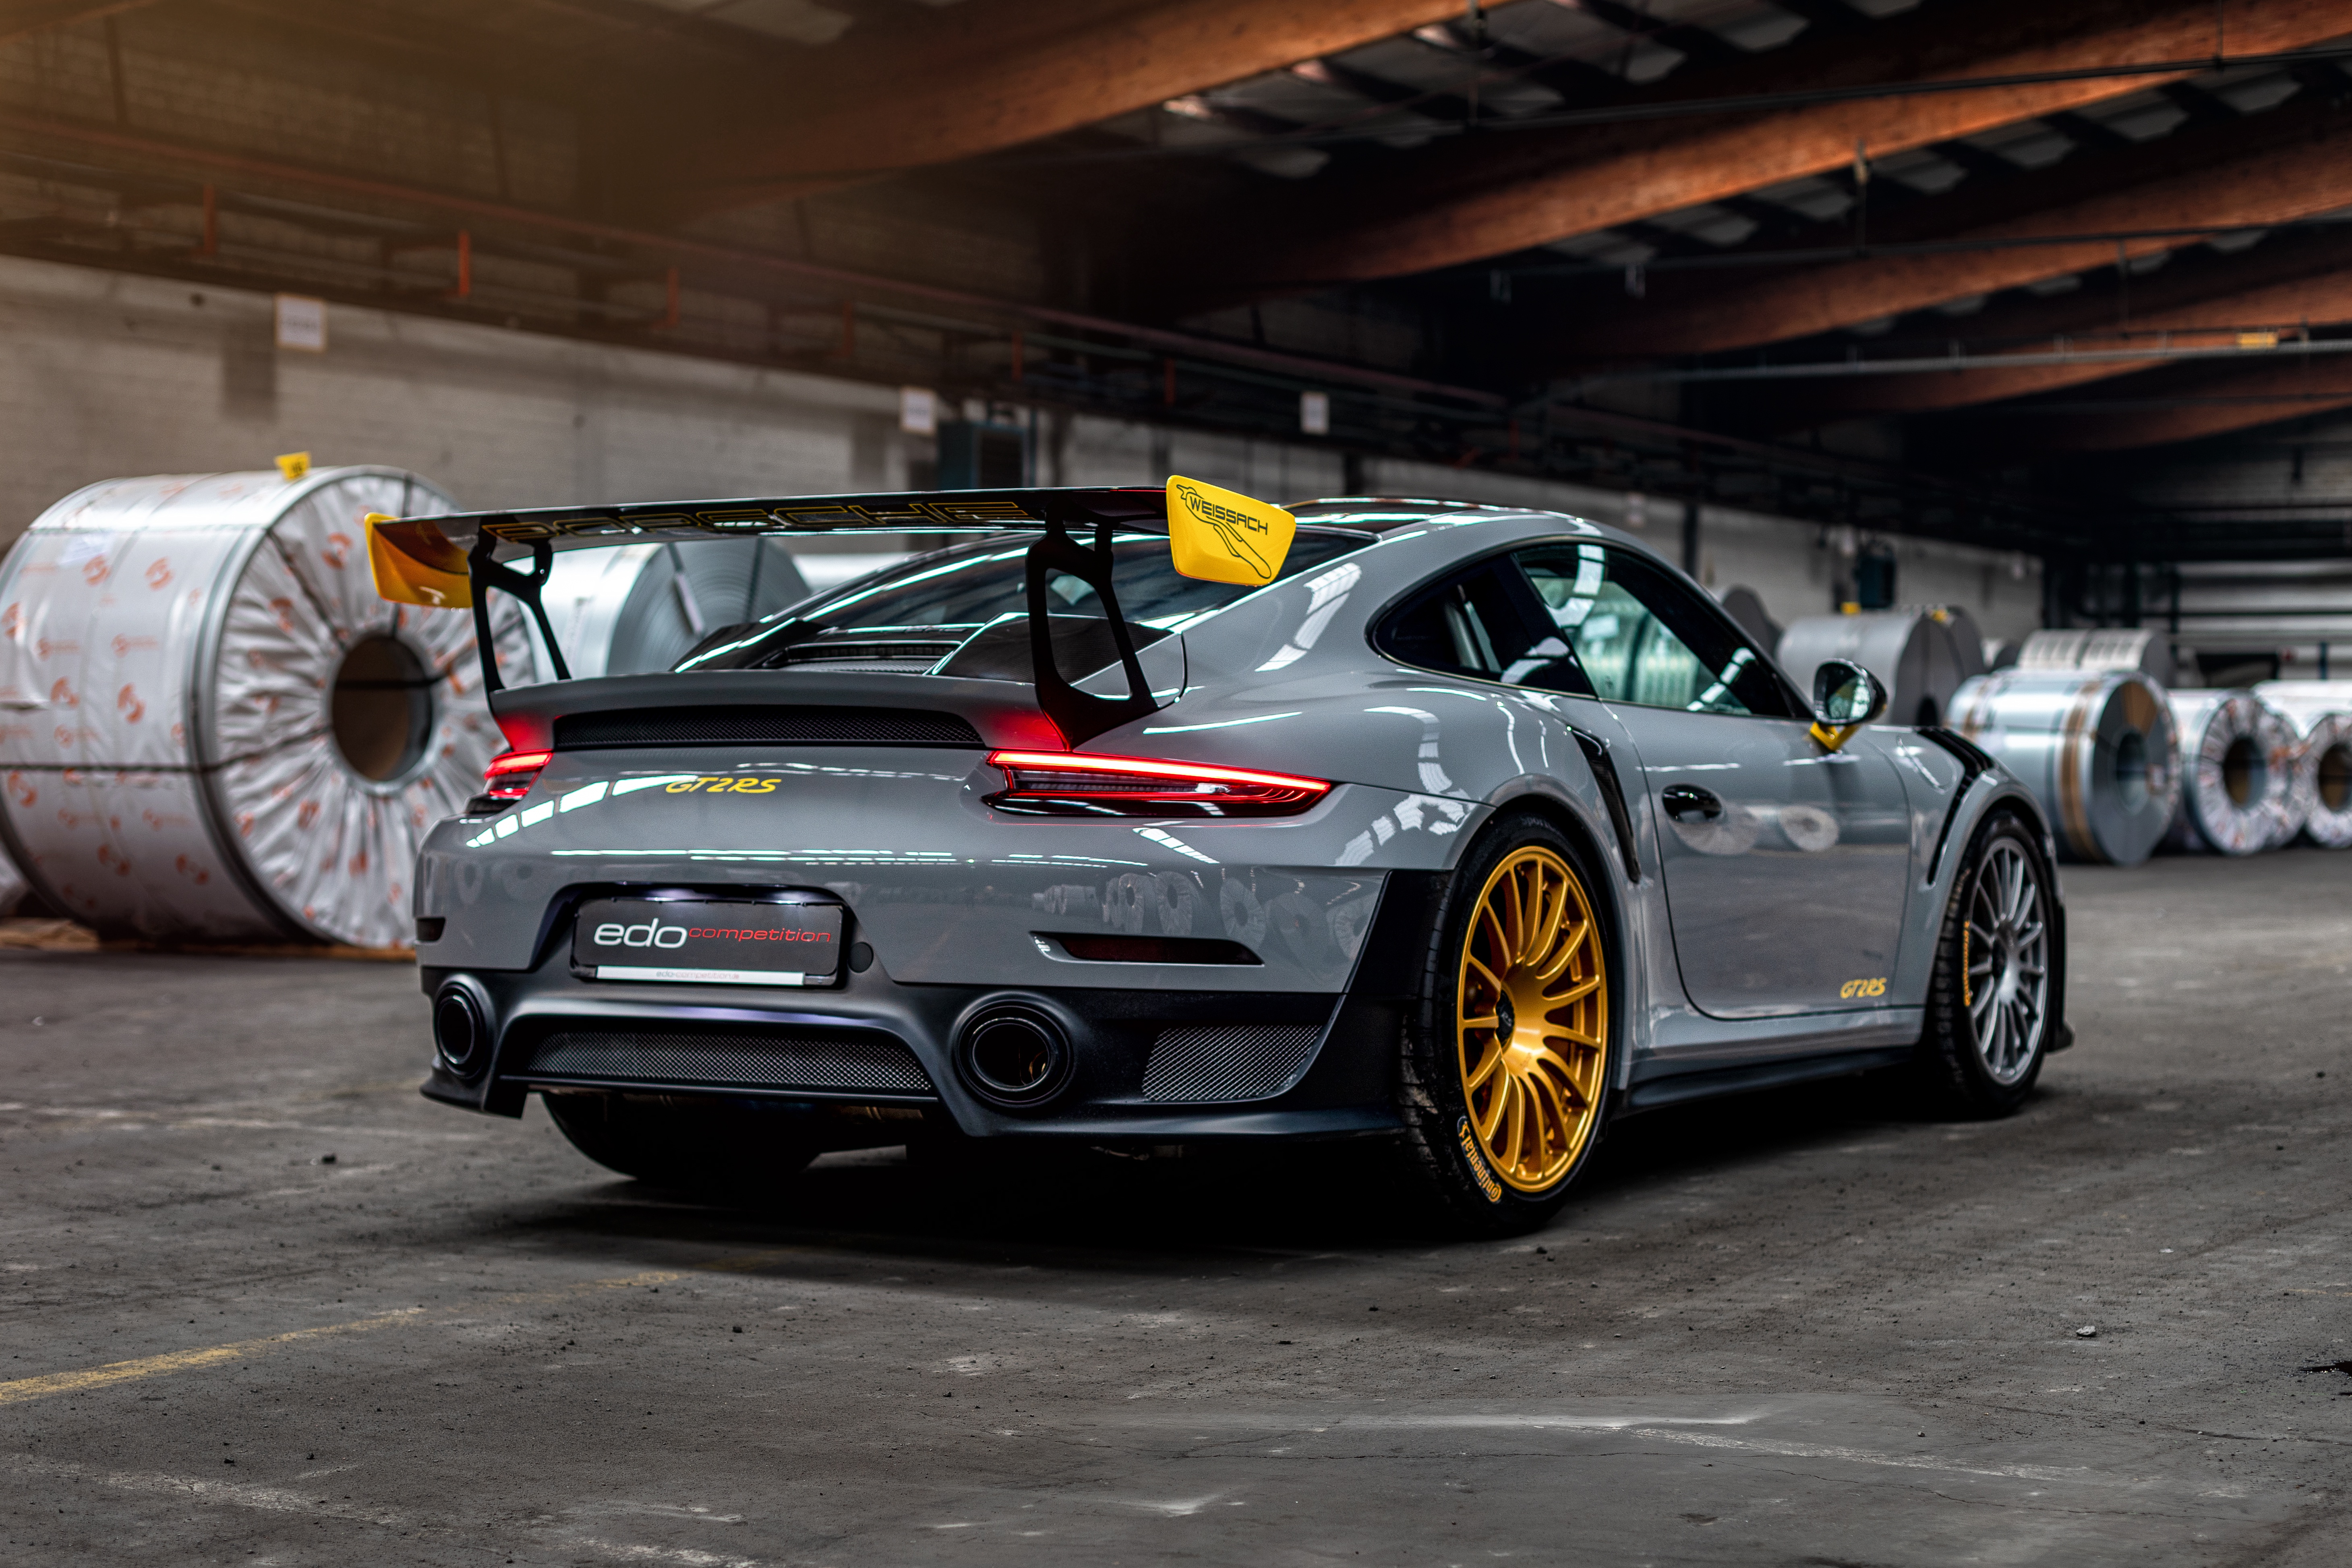 Porsche 911 gt2 RS. Porsche 911 gt2 2020. Порше 911 gt2 RS 2019. Porsche 911 Turbo s gt3. Gt 2 sport